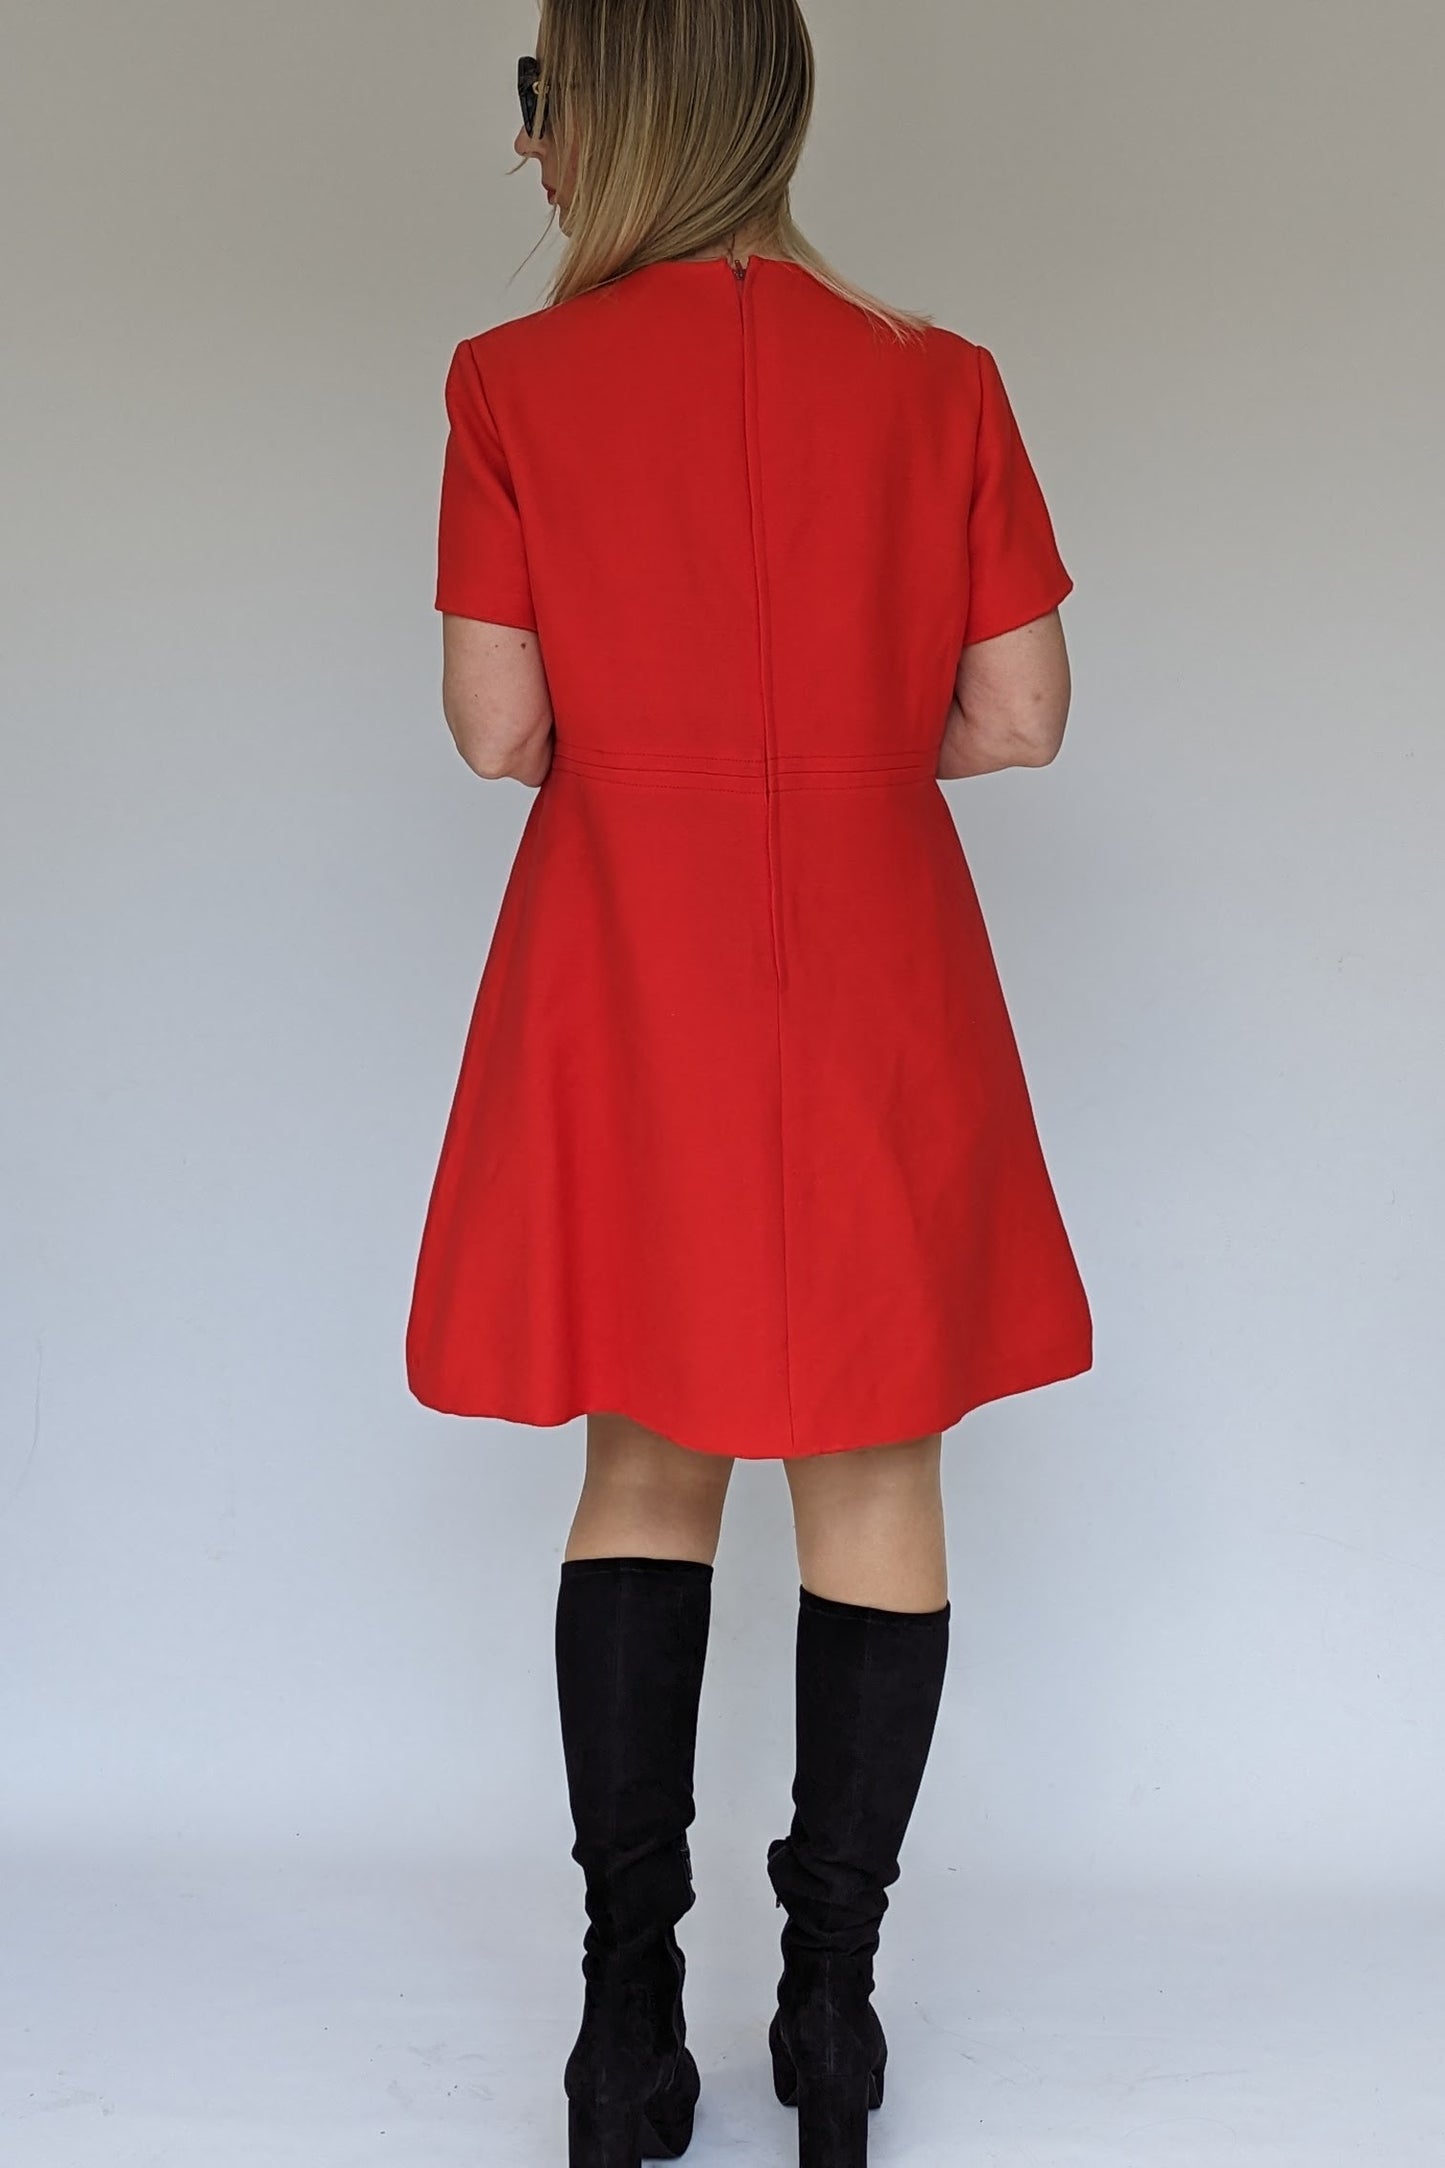 1960s vintage red wool dress